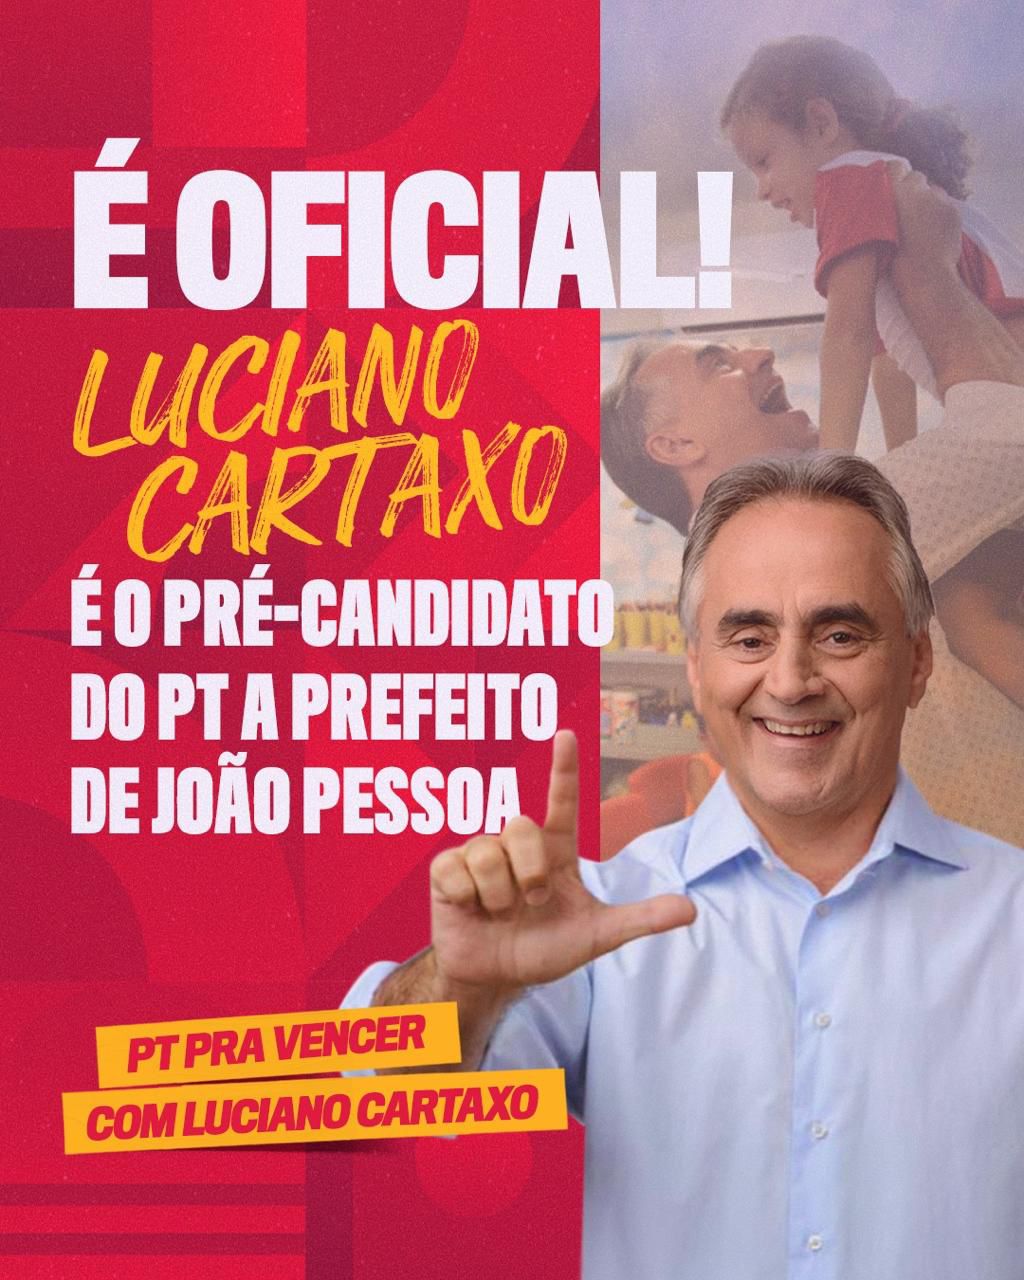 Luciano Cartaxo tem pré-candidatura a prefeito de João Pessoa homologada pelo PT: “Voltaremos a cuidar das pessoas!”